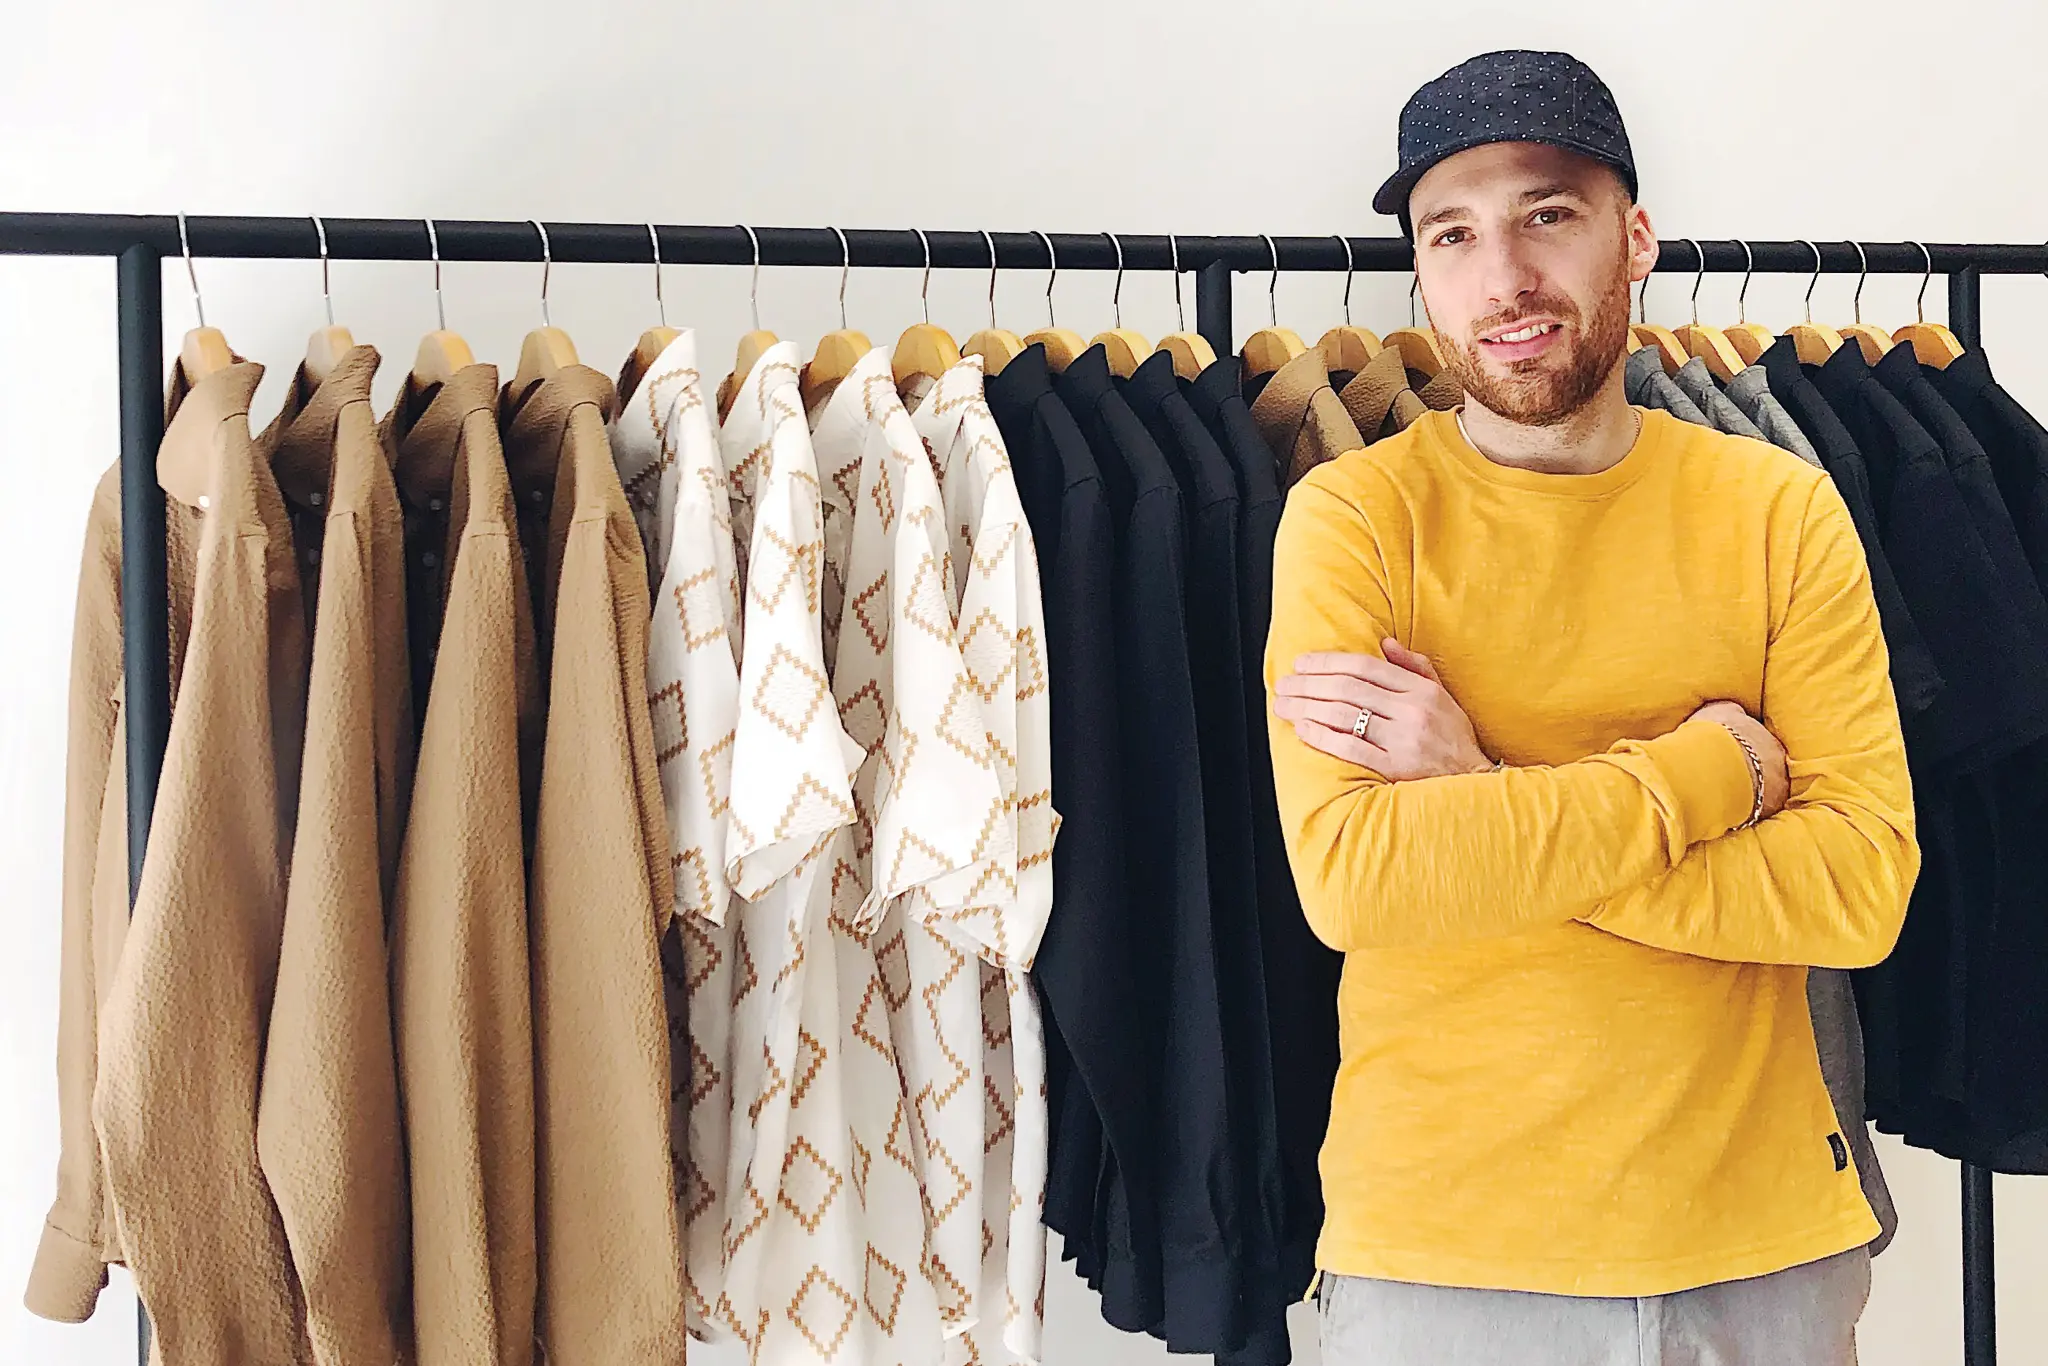 Matteo Sgaramella, fondateur de OUTCLASS, pose avec des vêtements de sa collection.